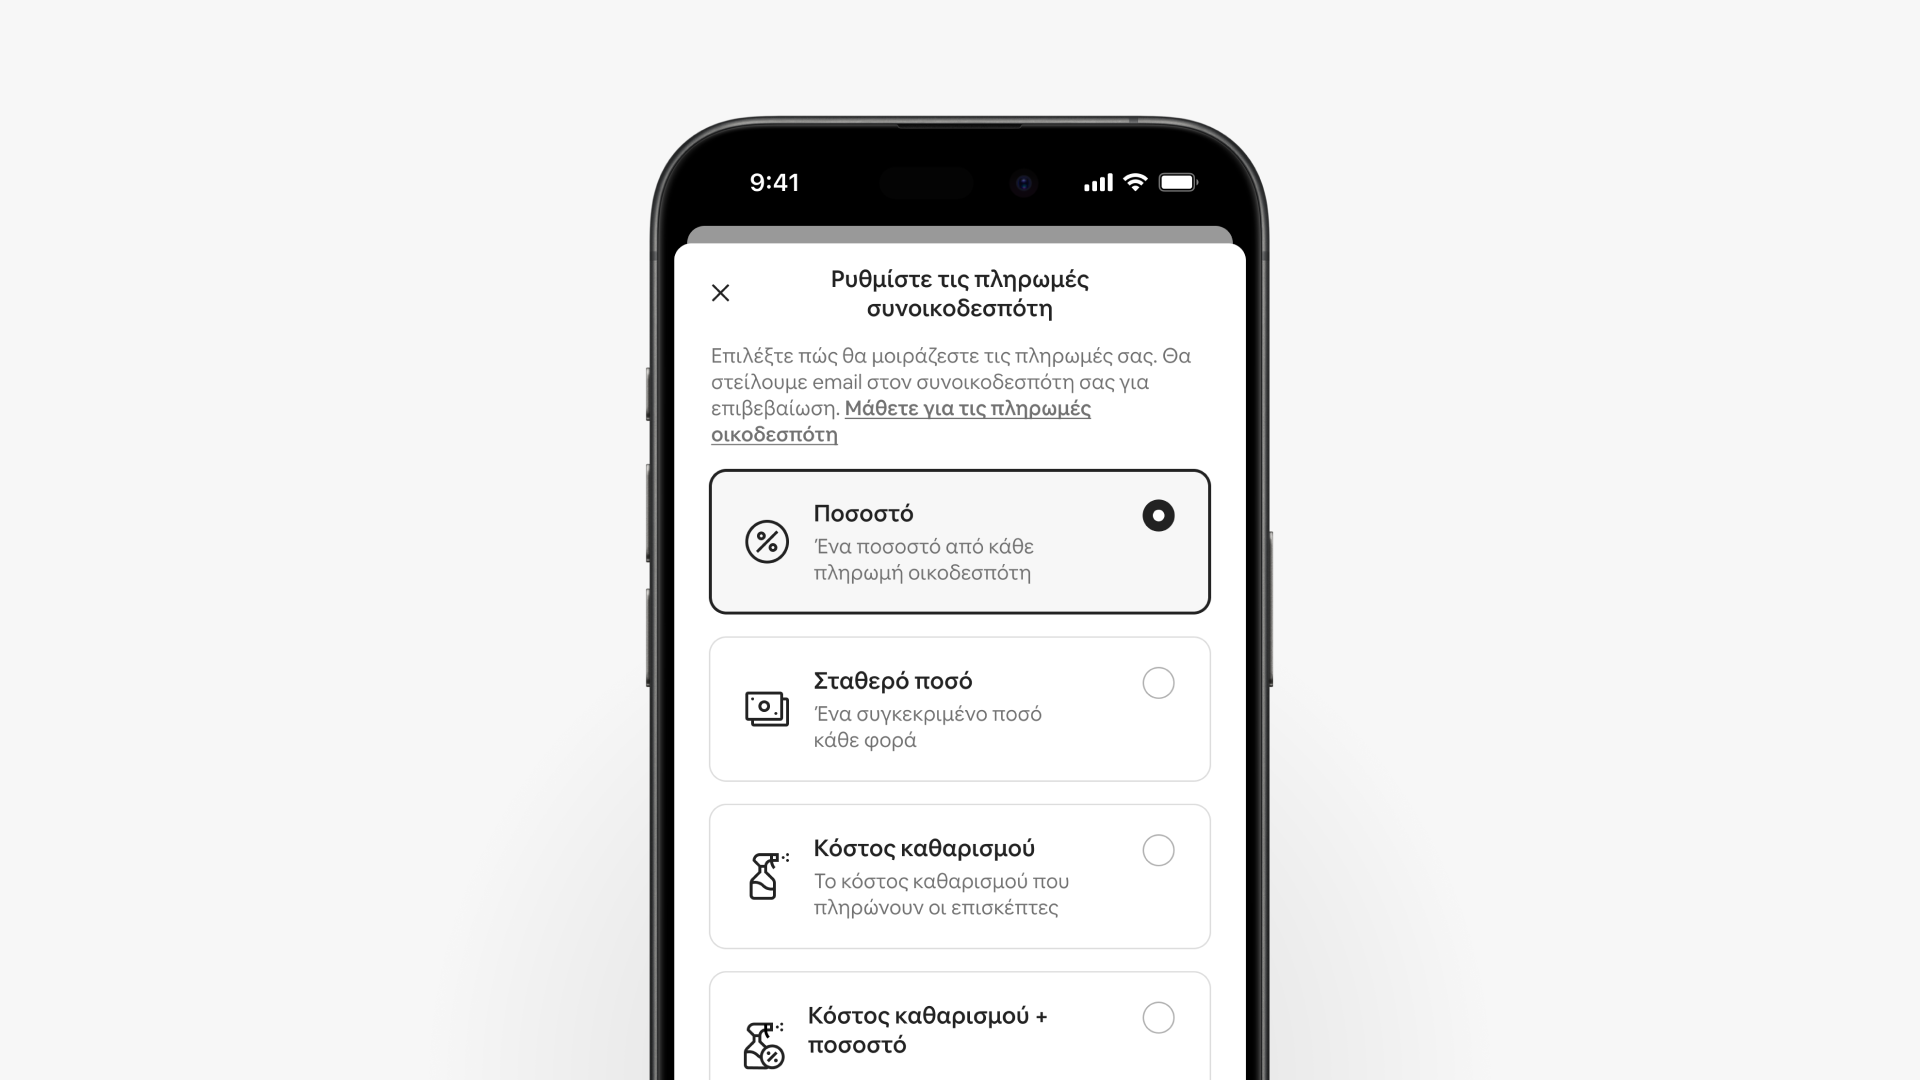 Σε μια οθόνη smartphone εμφανίζεται η σελίδα πληρωμών συνοικοδεσπότη, με τέσσερις επιλογές για το πώς μοιράζονται οι πληρωμές οικοδεσπότη.